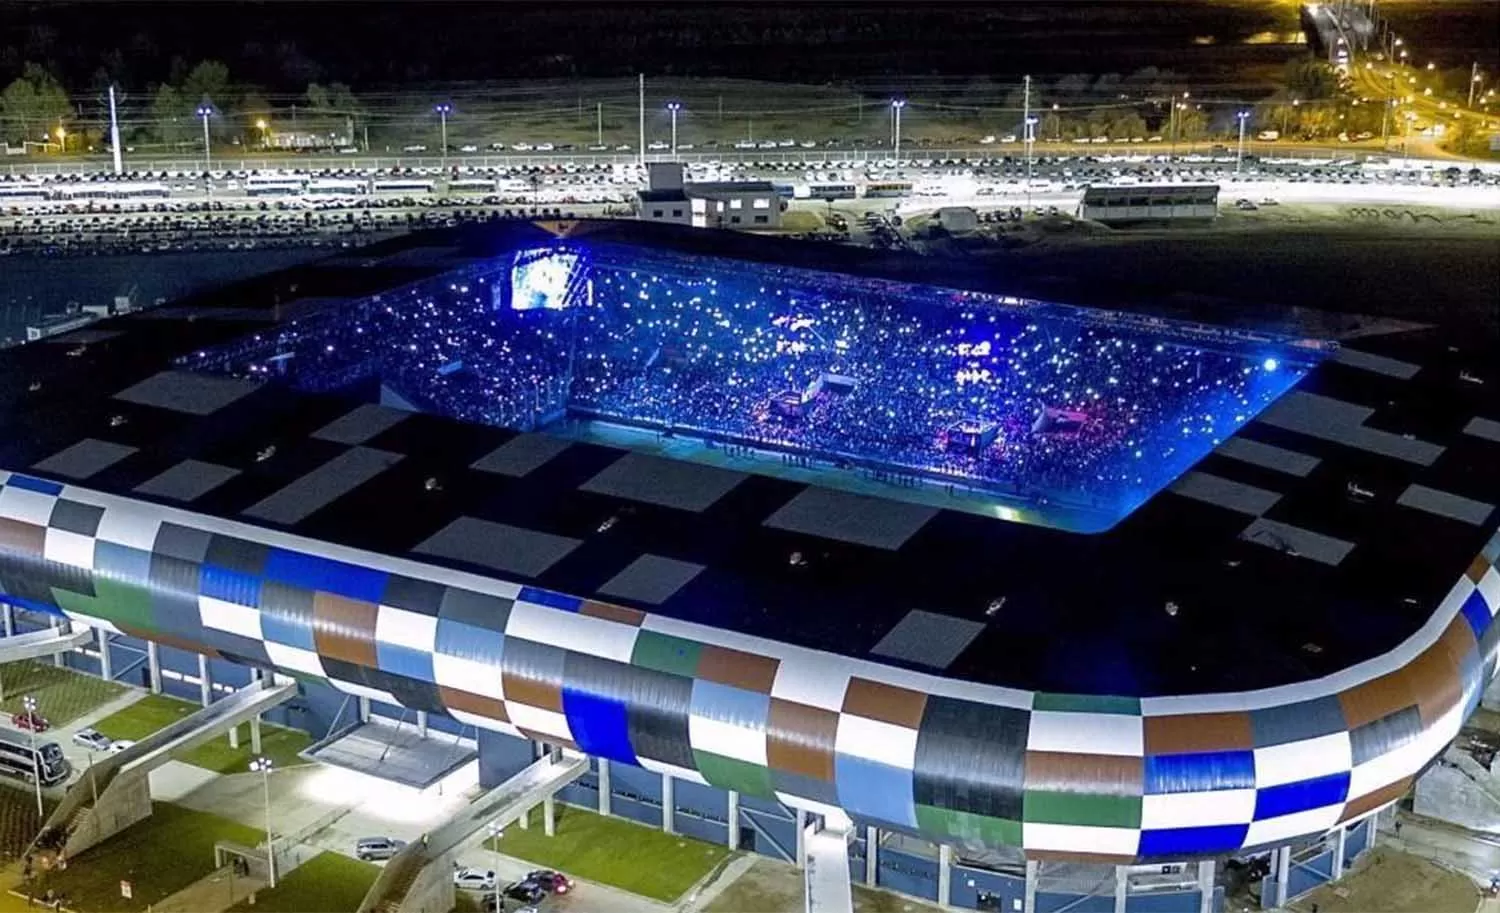 DESLUMBRANTE. Una vista aérea del estadio de La Pedrera en San Luis, donde esta noche jugará River con Gimnasia (M).